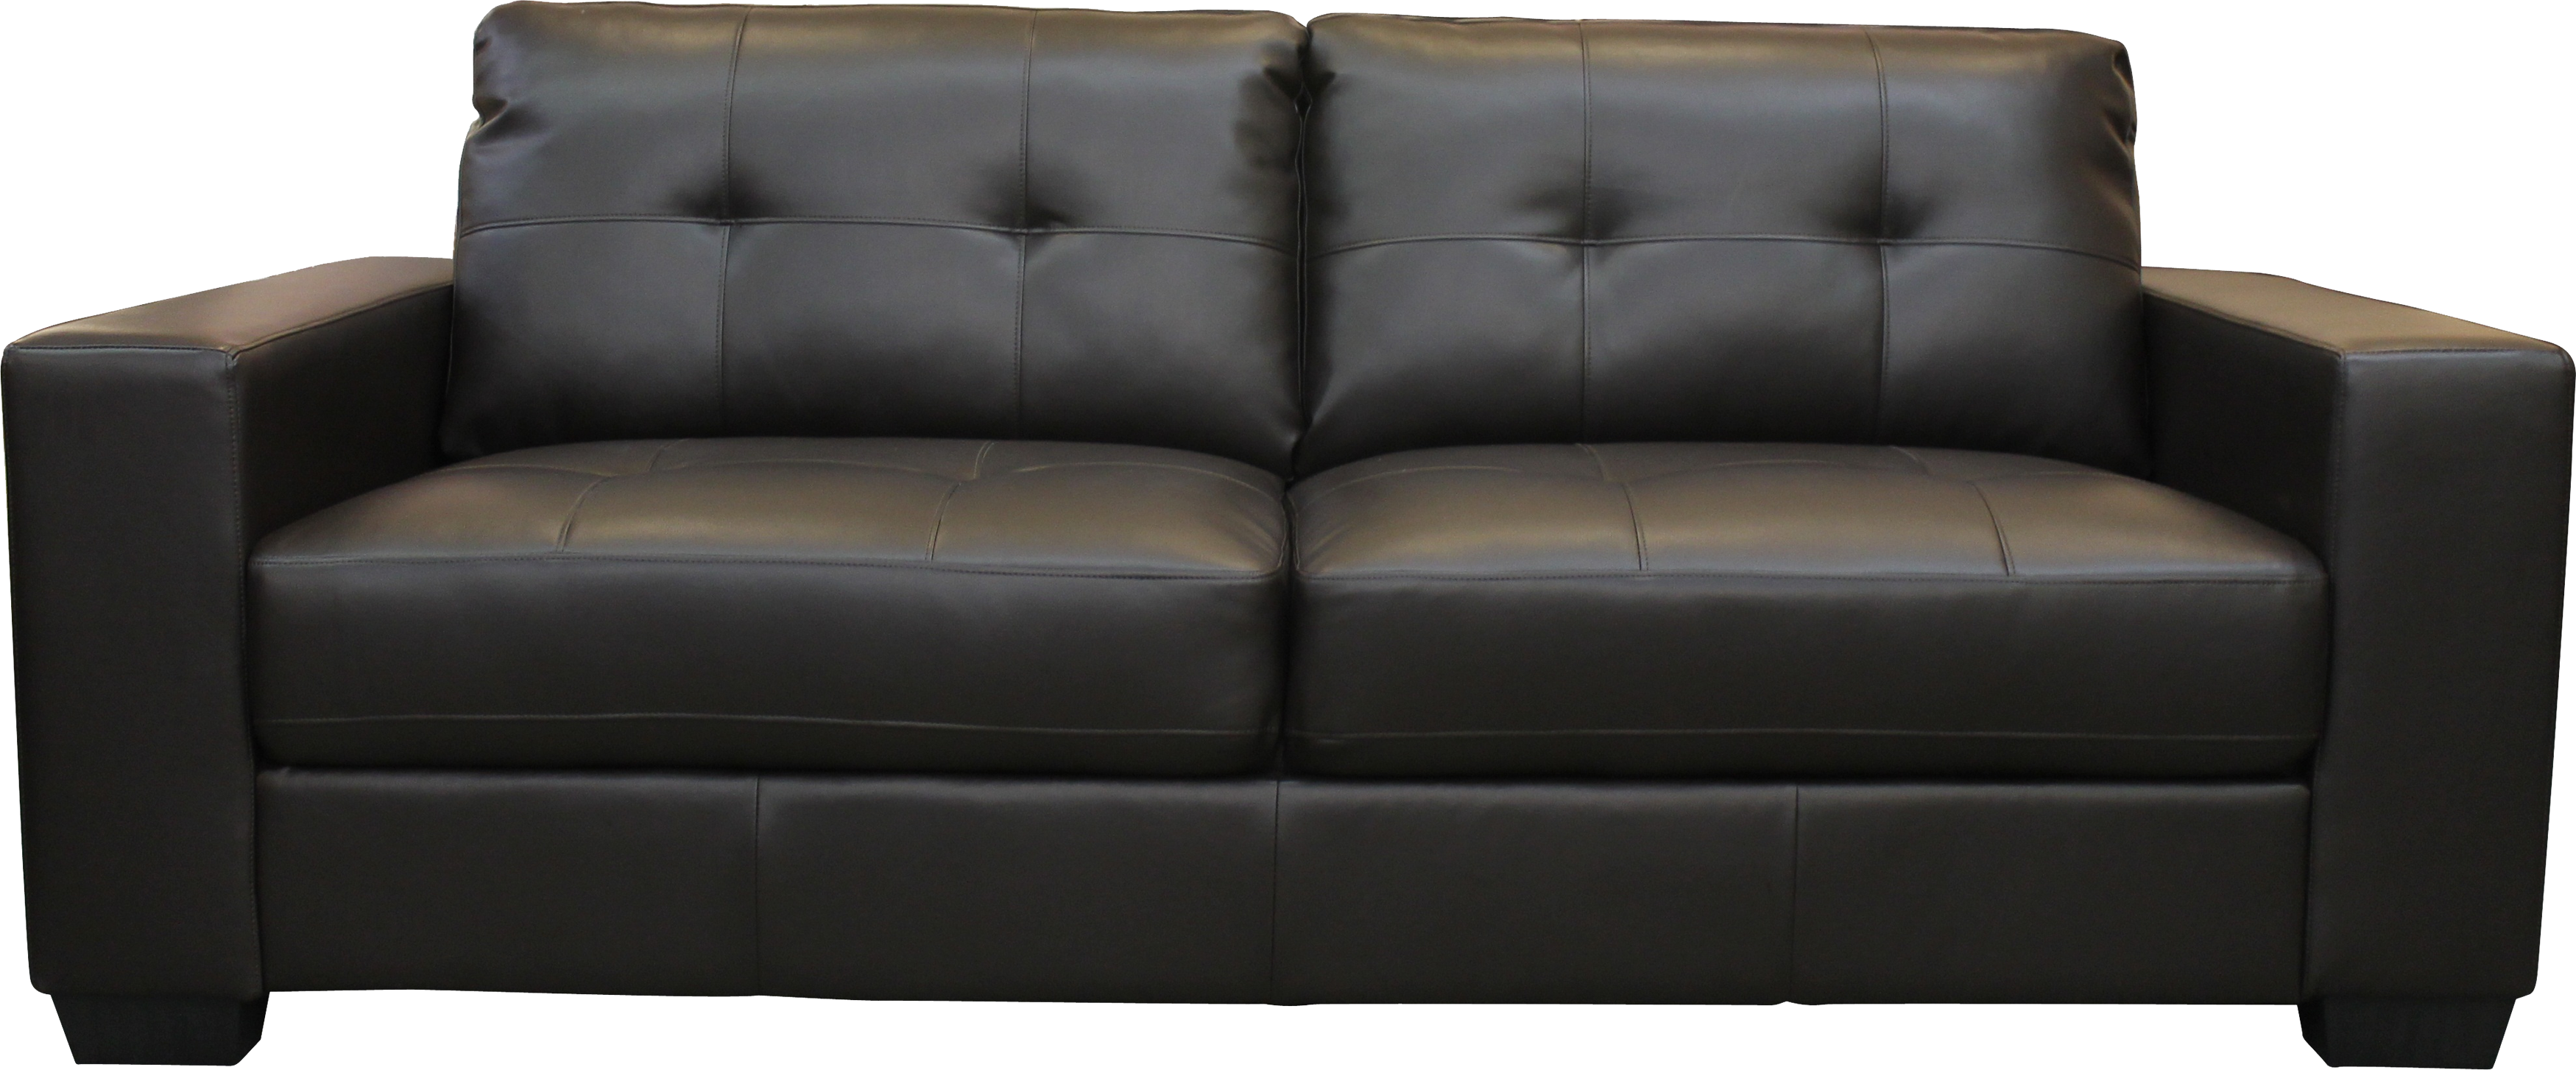 Sofa PNG - 26130